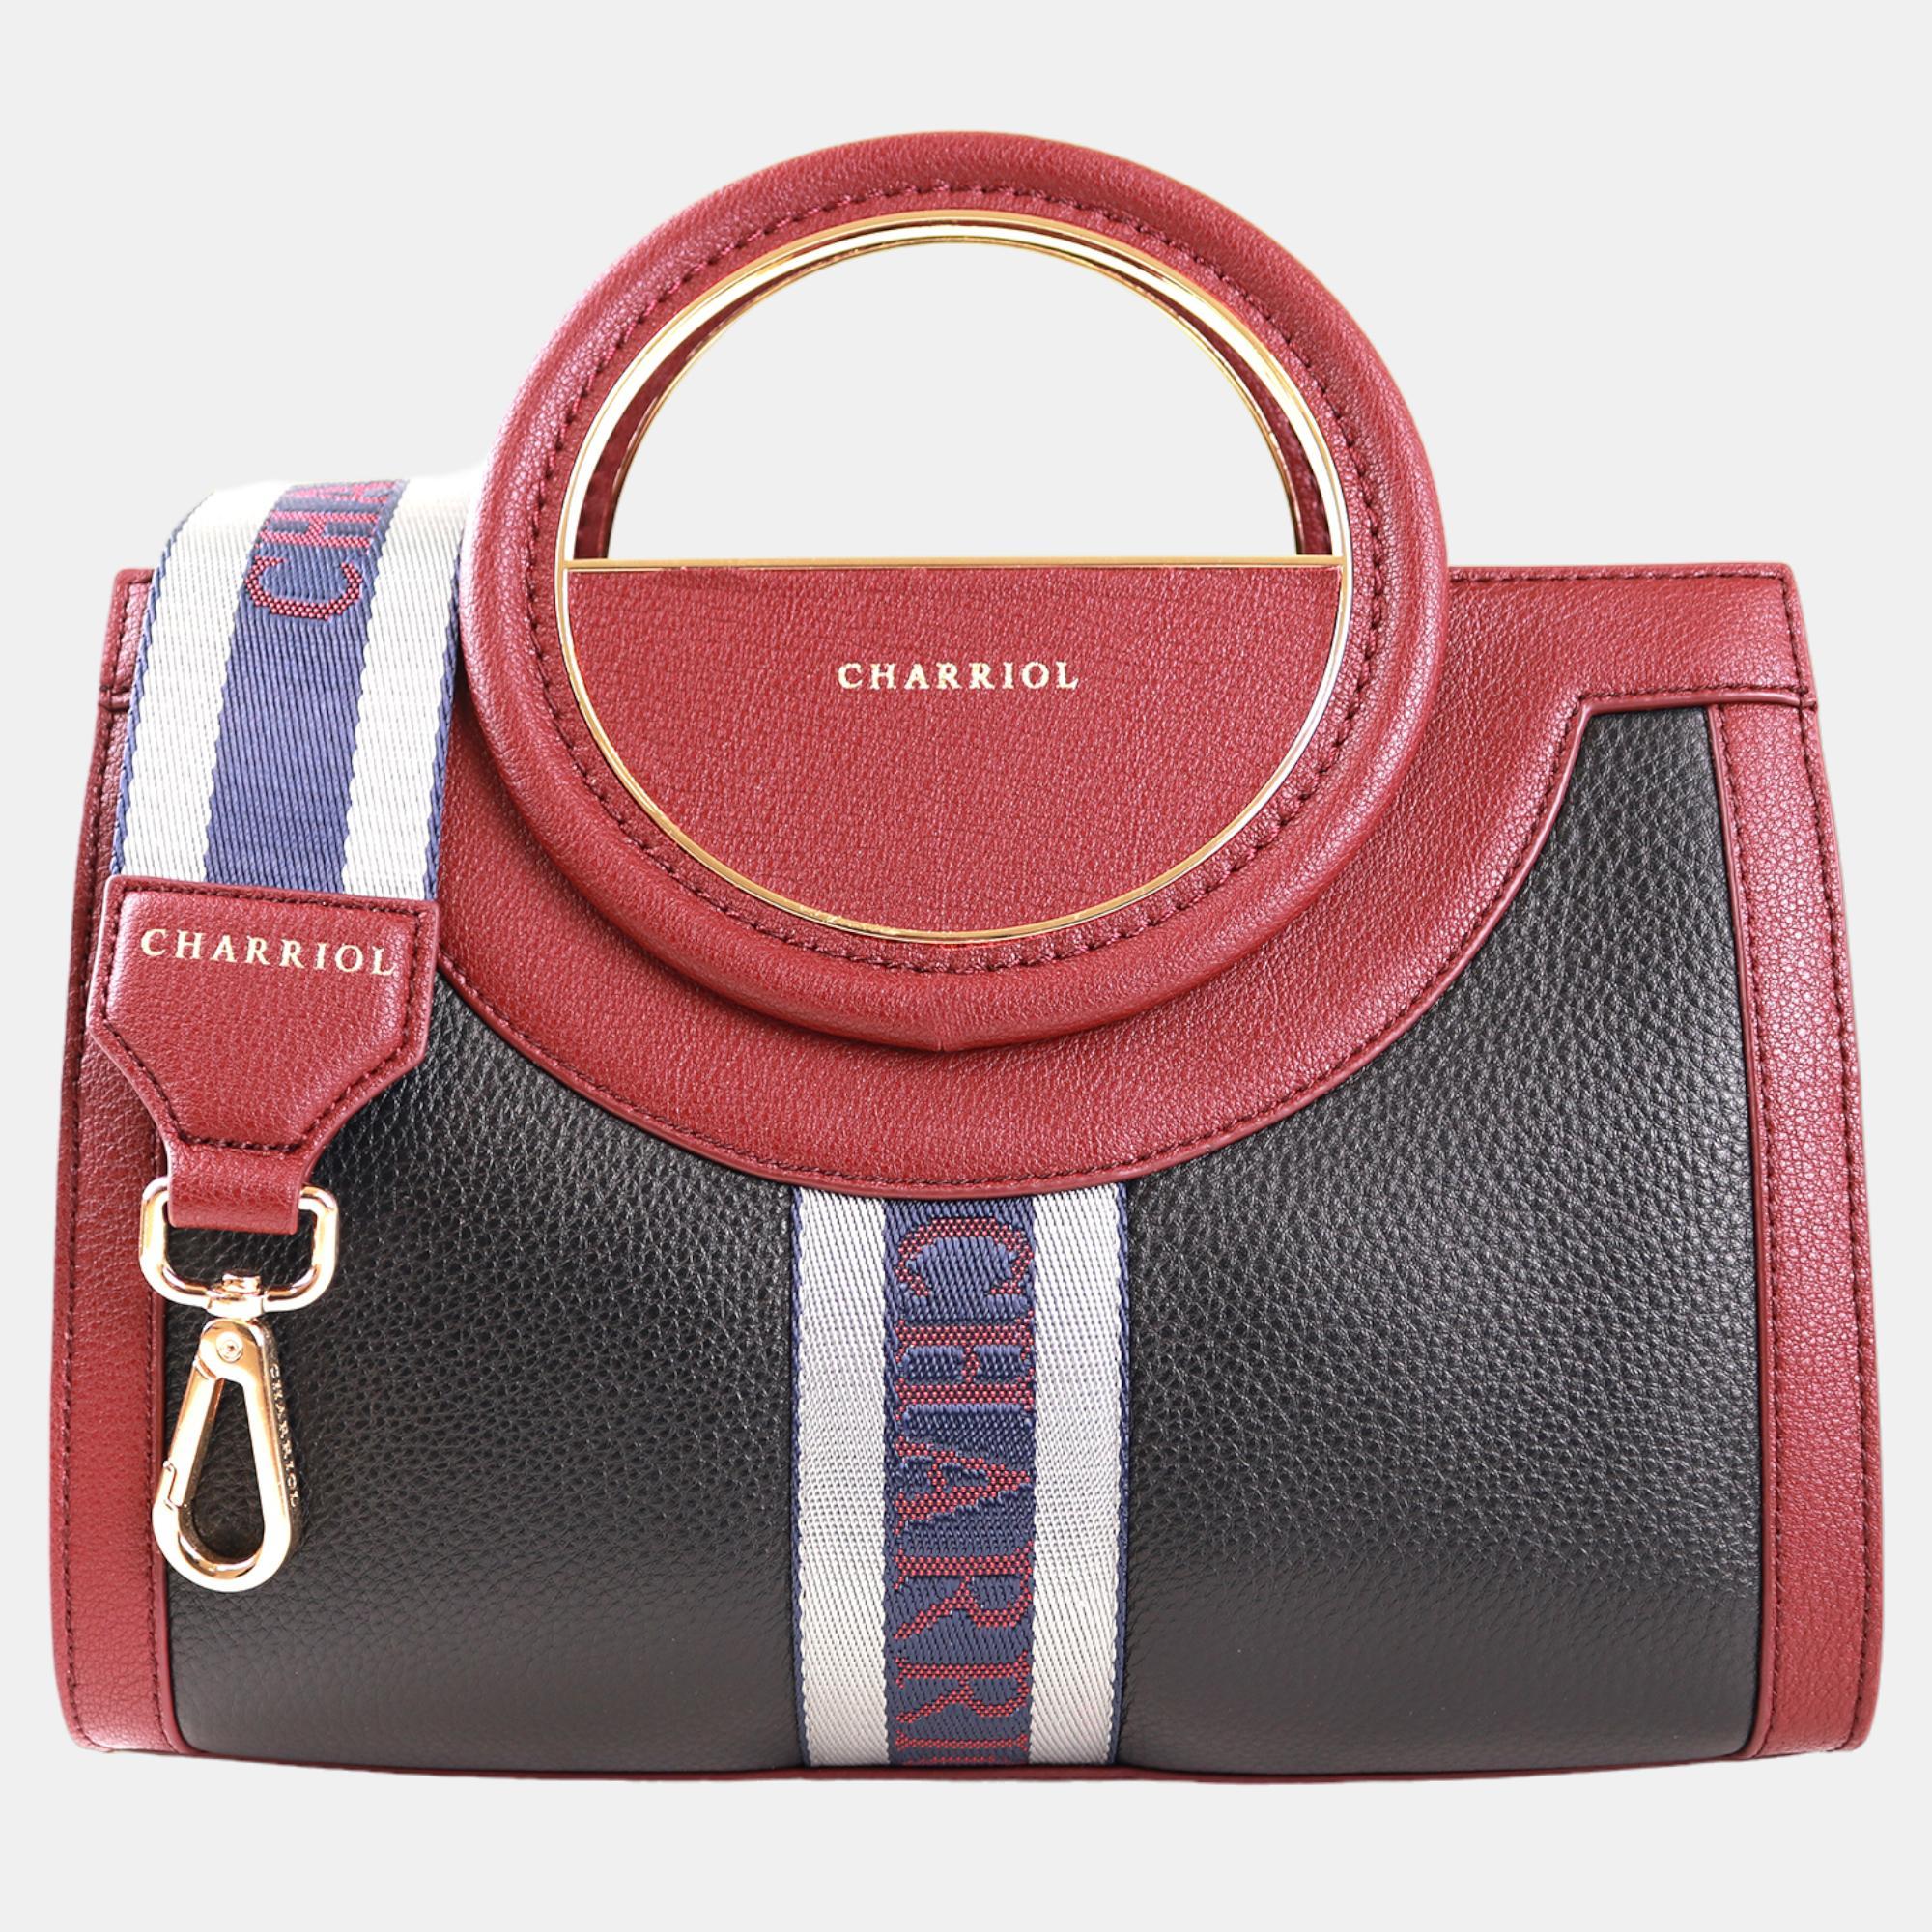 Charriol bordeaux leather deauville handbag